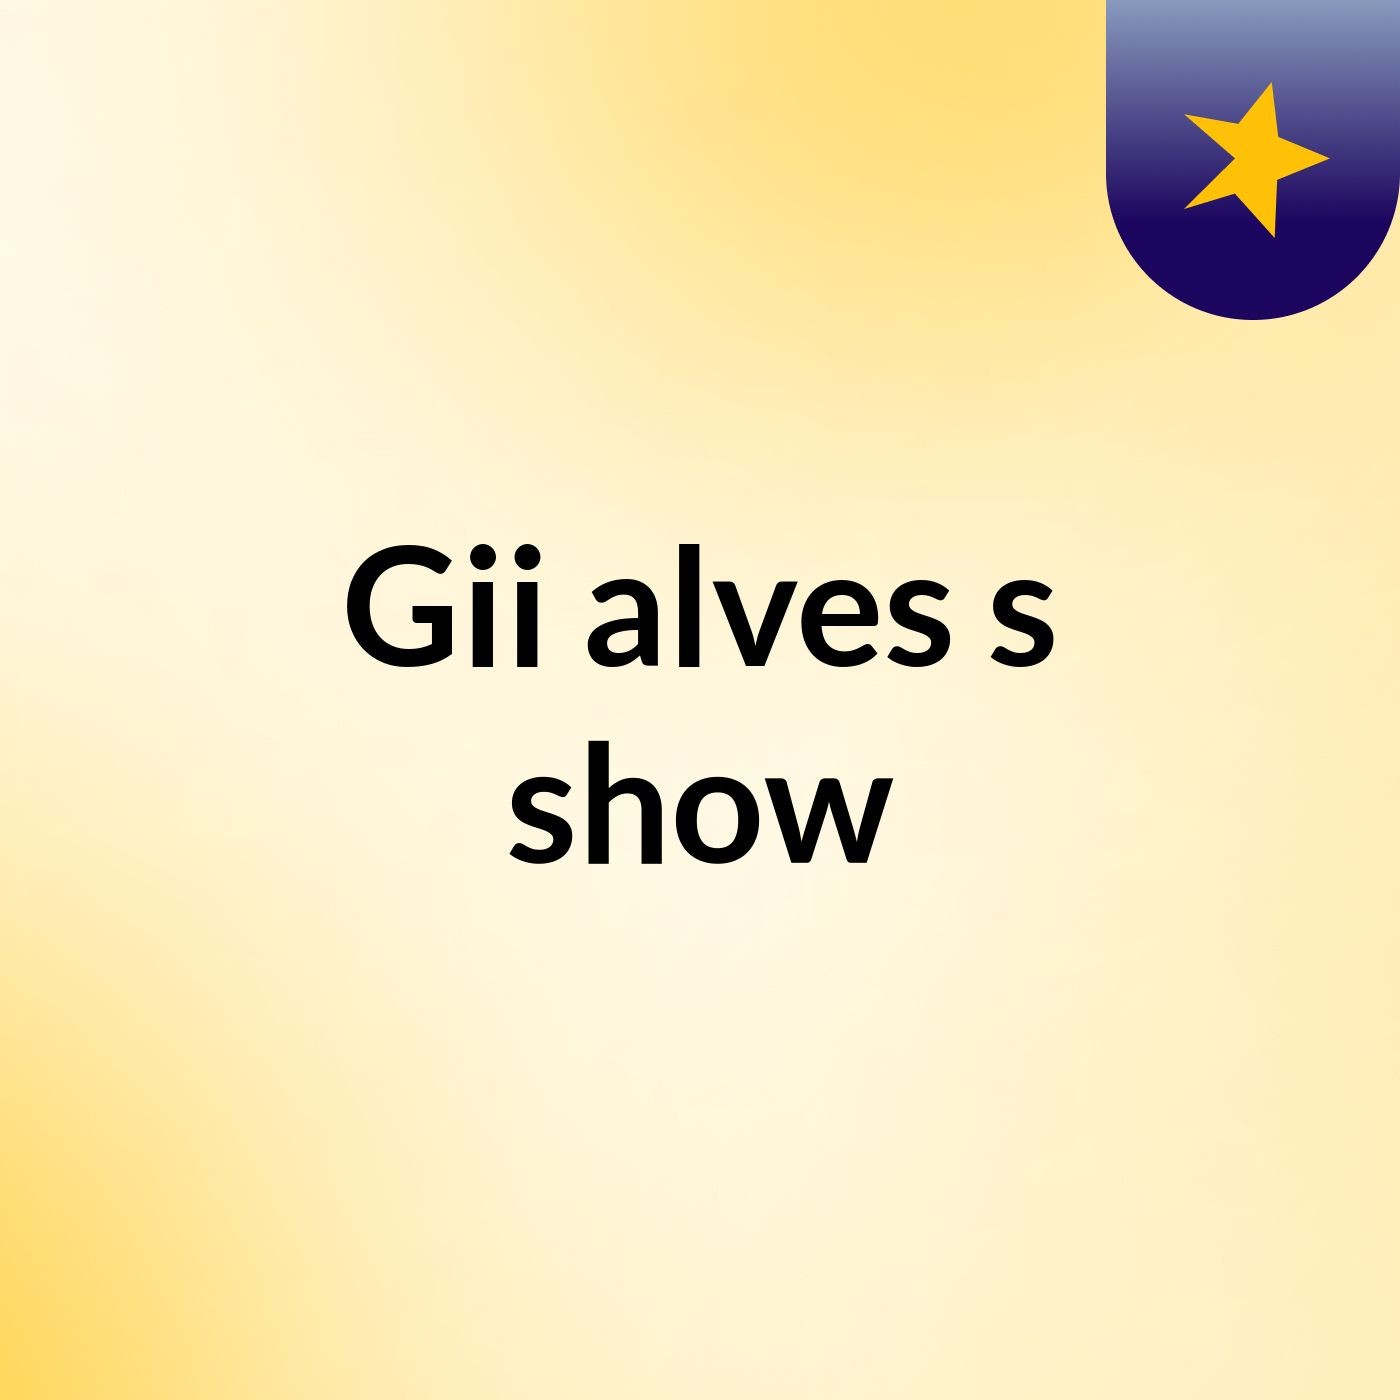 Gii alves's show